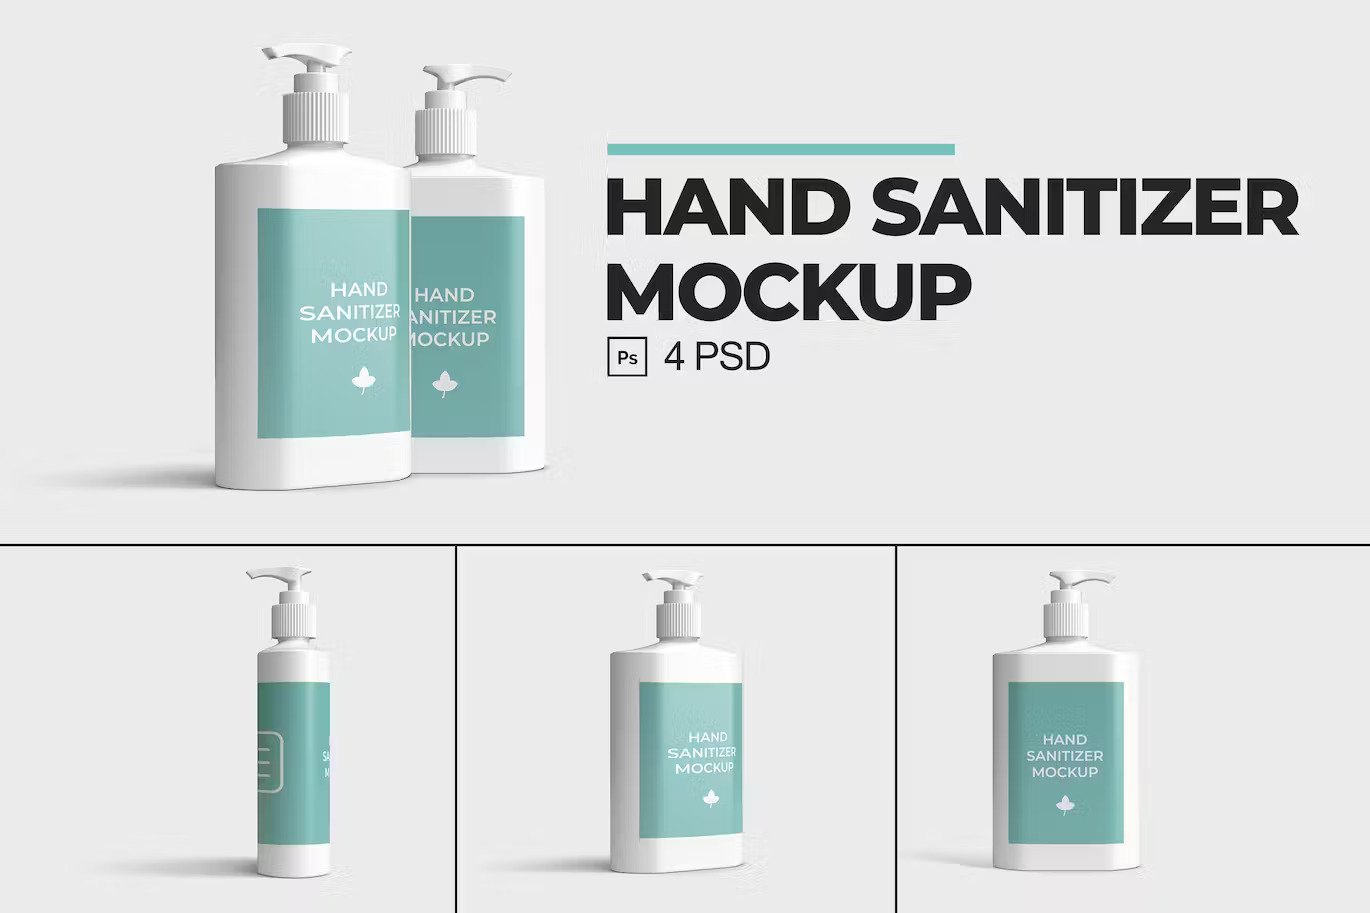 A hand sanitizer mockup set